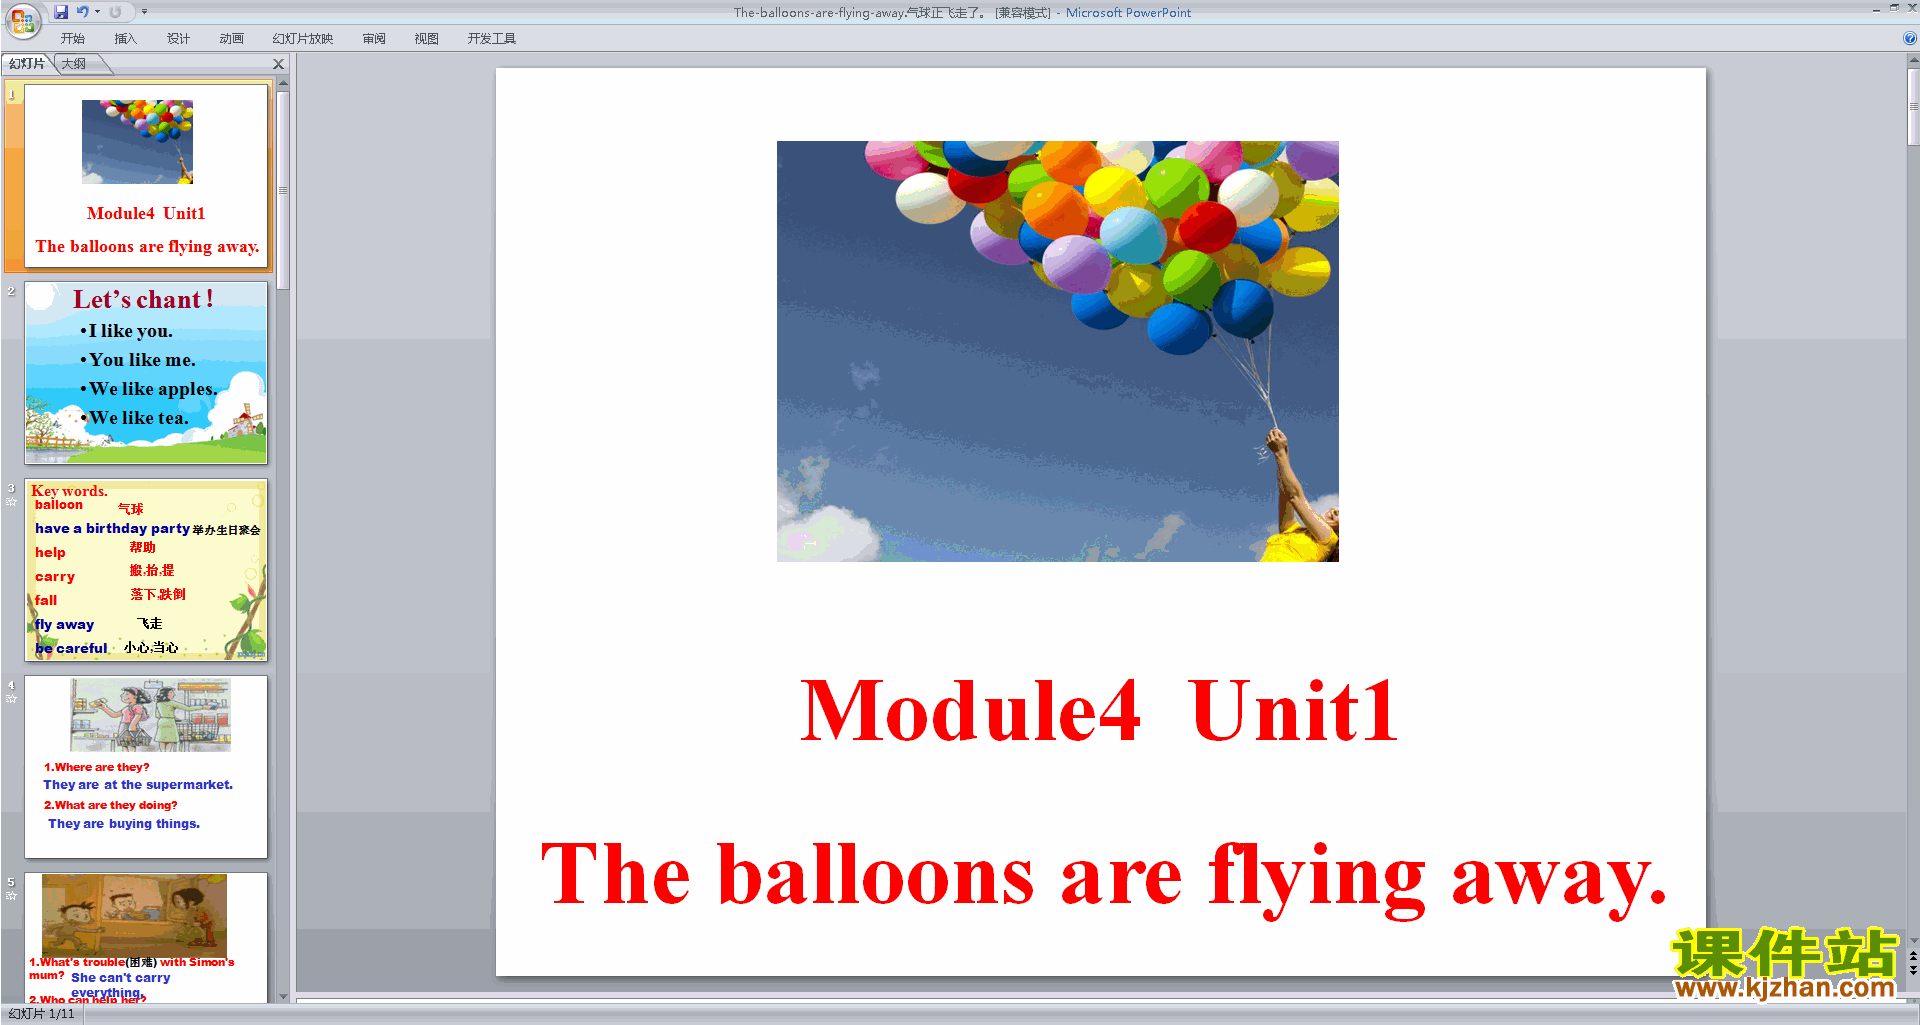 Module4 The balloons are flying awaypptμ